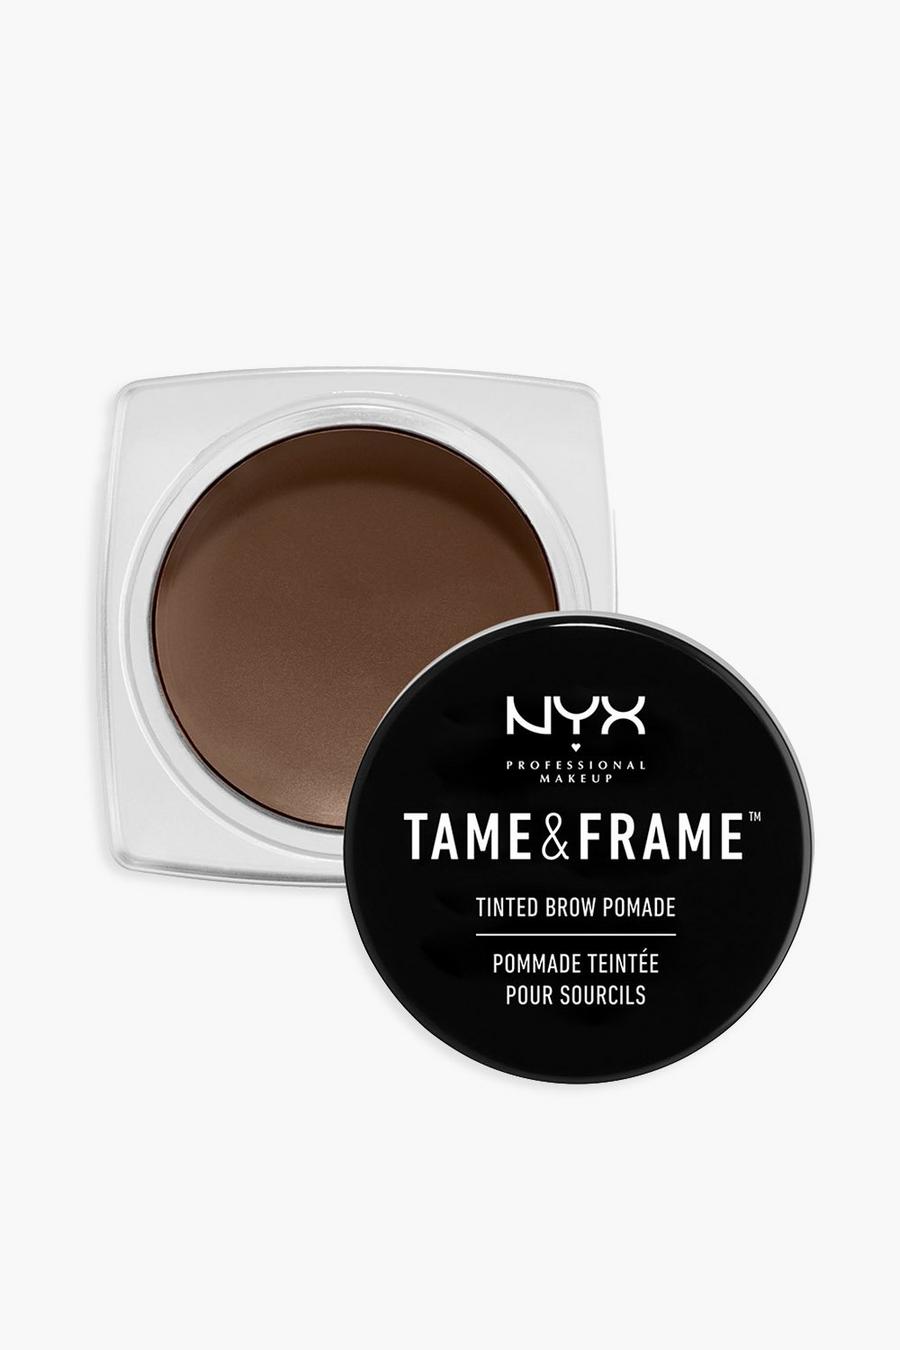 Pomada para cejas Tame & Frame de NYX Professional Makeup, 02 chocolate image number 1